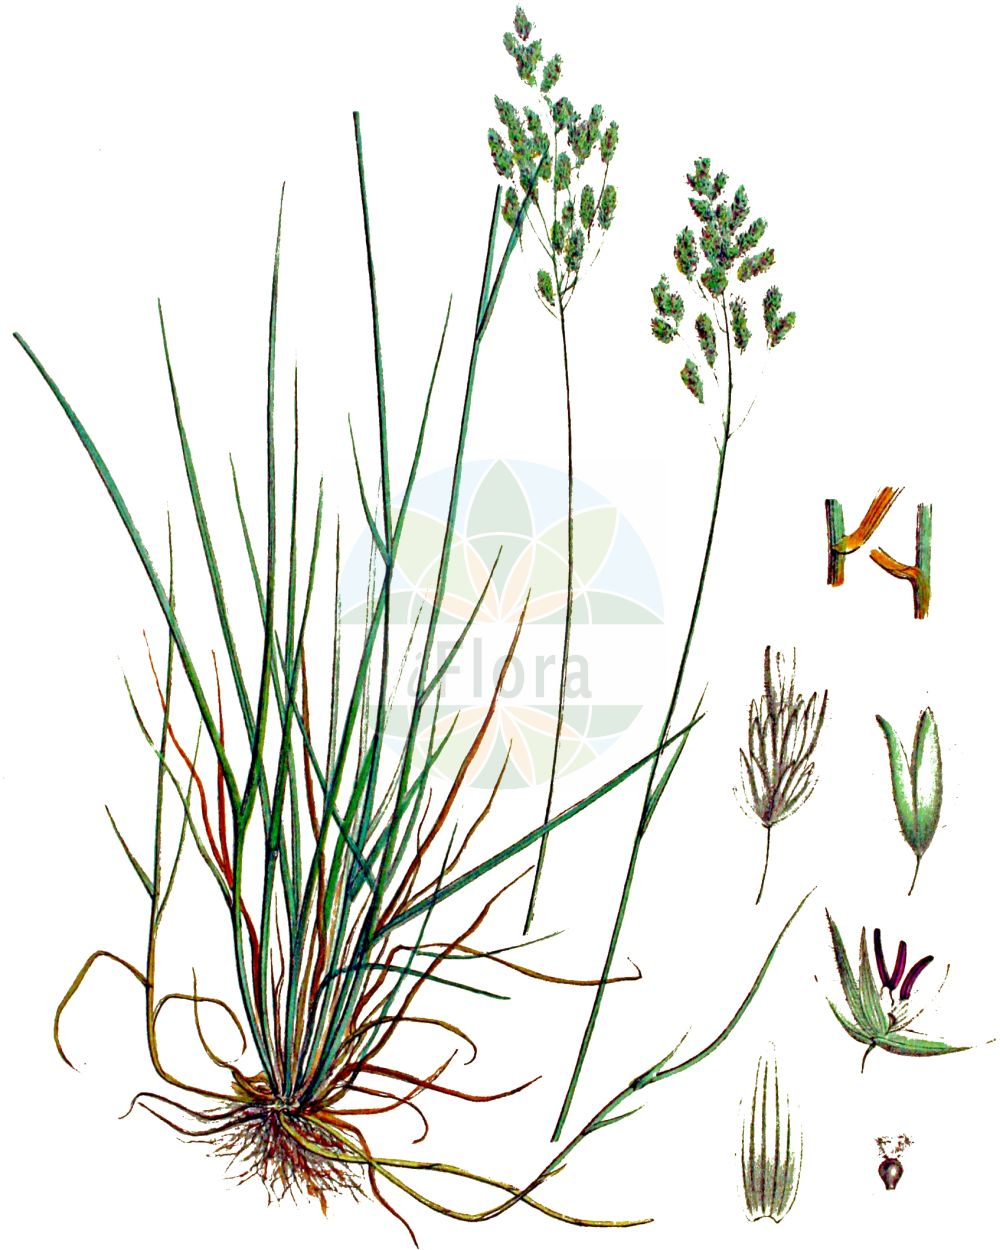 Historische Abbildung von Poa pratensis (Wiesen-Rispengras - Smooth Meadow-grass). Das Bild zeigt Blatt, Bluete, Frucht und Same. ---- Historical Drawing of Poa pratensis (Wiesen-Rispengras - Smooth Meadow-grass). The image is showing leaf, flower, fruit and seed.(Poa pratensis,Wiesen-Rispengras,Smooth Meadow-grass,Poa attica,Poa pinegensis,Poa pratensis,Poa pratensis subsp. attica,Wiesen-Rispengras,Smooth Meadow-grass,Birdgrass,June Grass,Kentucky Bluegrass,Meadowgrass,Smooth-stalked Meadowgrass,Poa,Rispengras,Bluegrass,Poaceae,Süßgräser,Grass family,Blatt,Bluete,Frucht,Same,leaf,flower,fruit,seed,Kops (1800-1934))